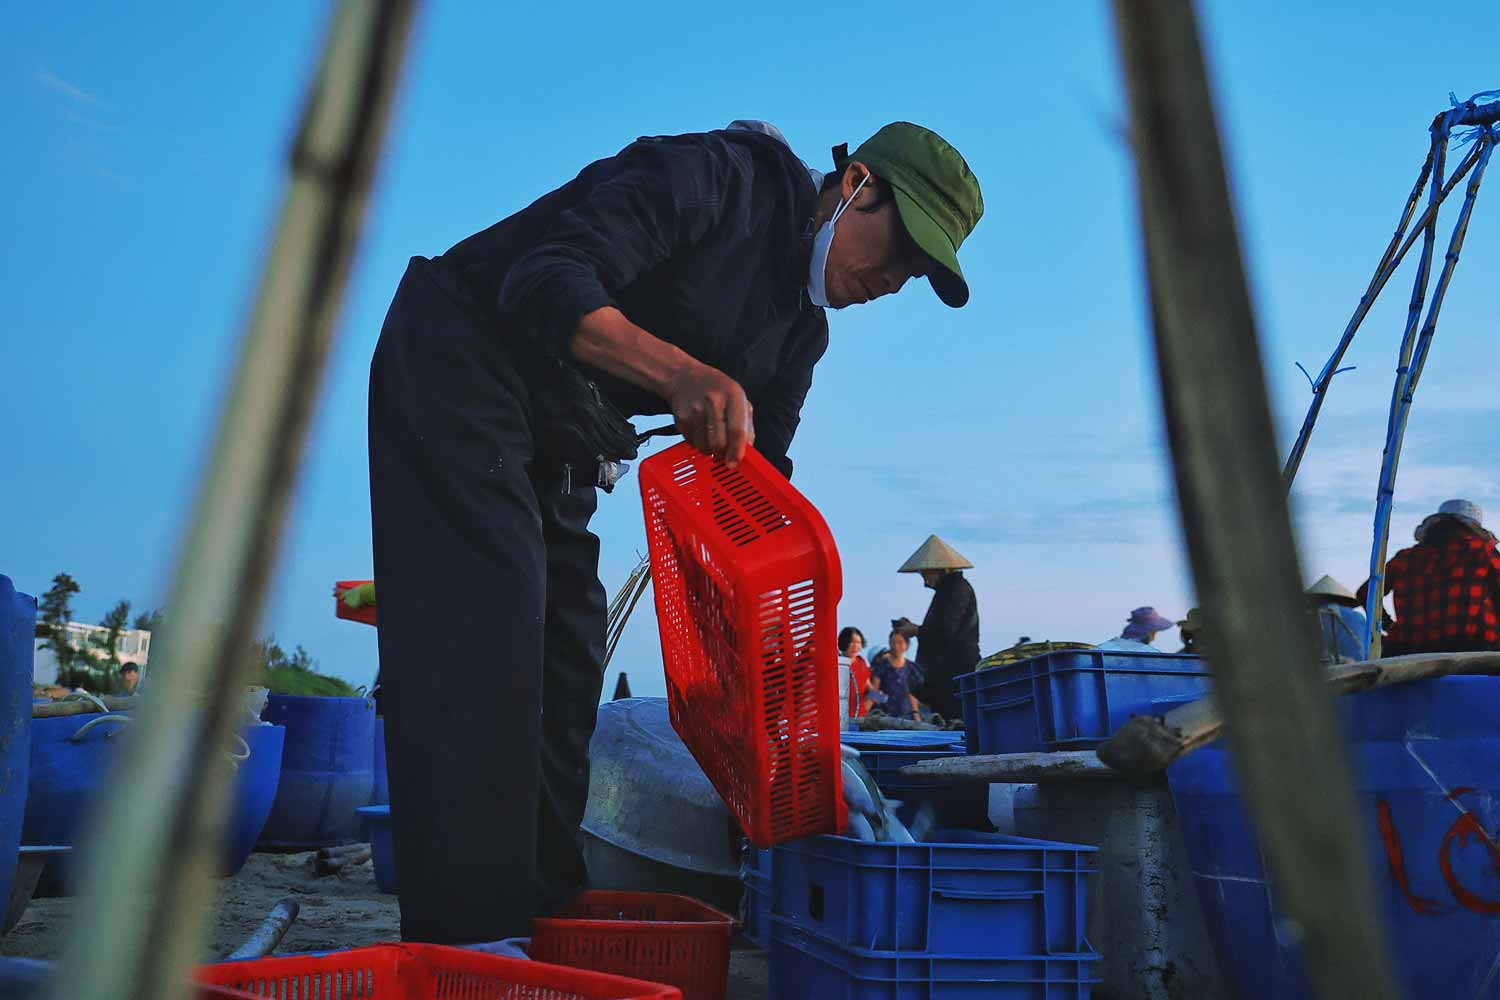 Chợ cá Tam Tiến chỉ hoạt động vào mùa hè. Đây là mùa hoạt động biển chính, bà con ra khơi nhiều, hải sản cũng phong phú hơn.